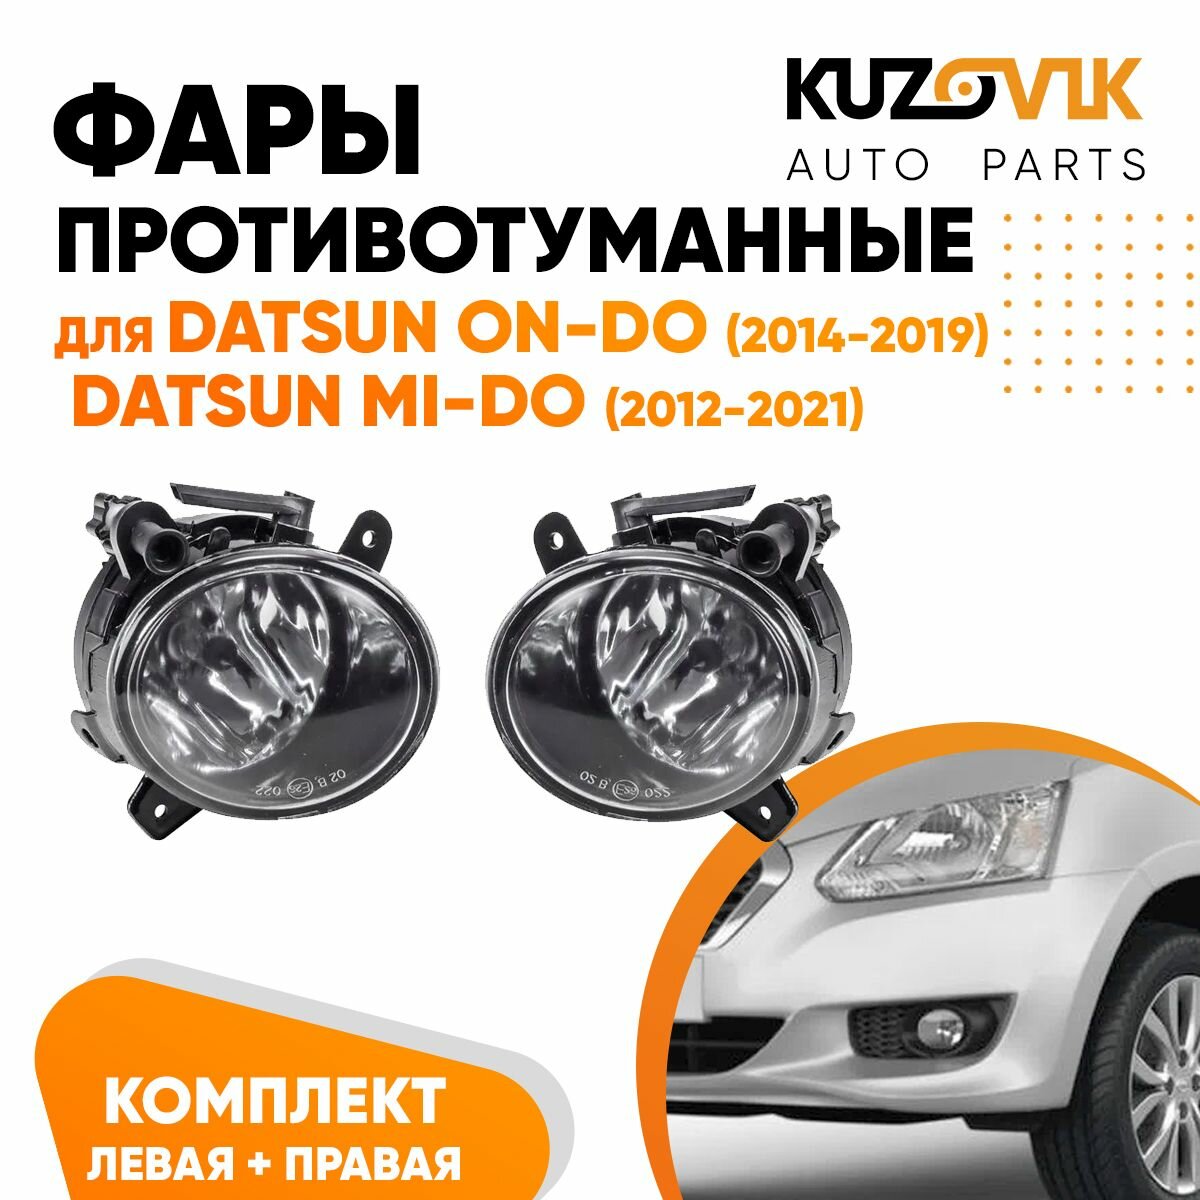 Фары противотуманные комплект для Датсун Он-До Datsun on-Do (2014-2019) / Ми-До mi-Do (2012-2021) 2 штуки левая + правая